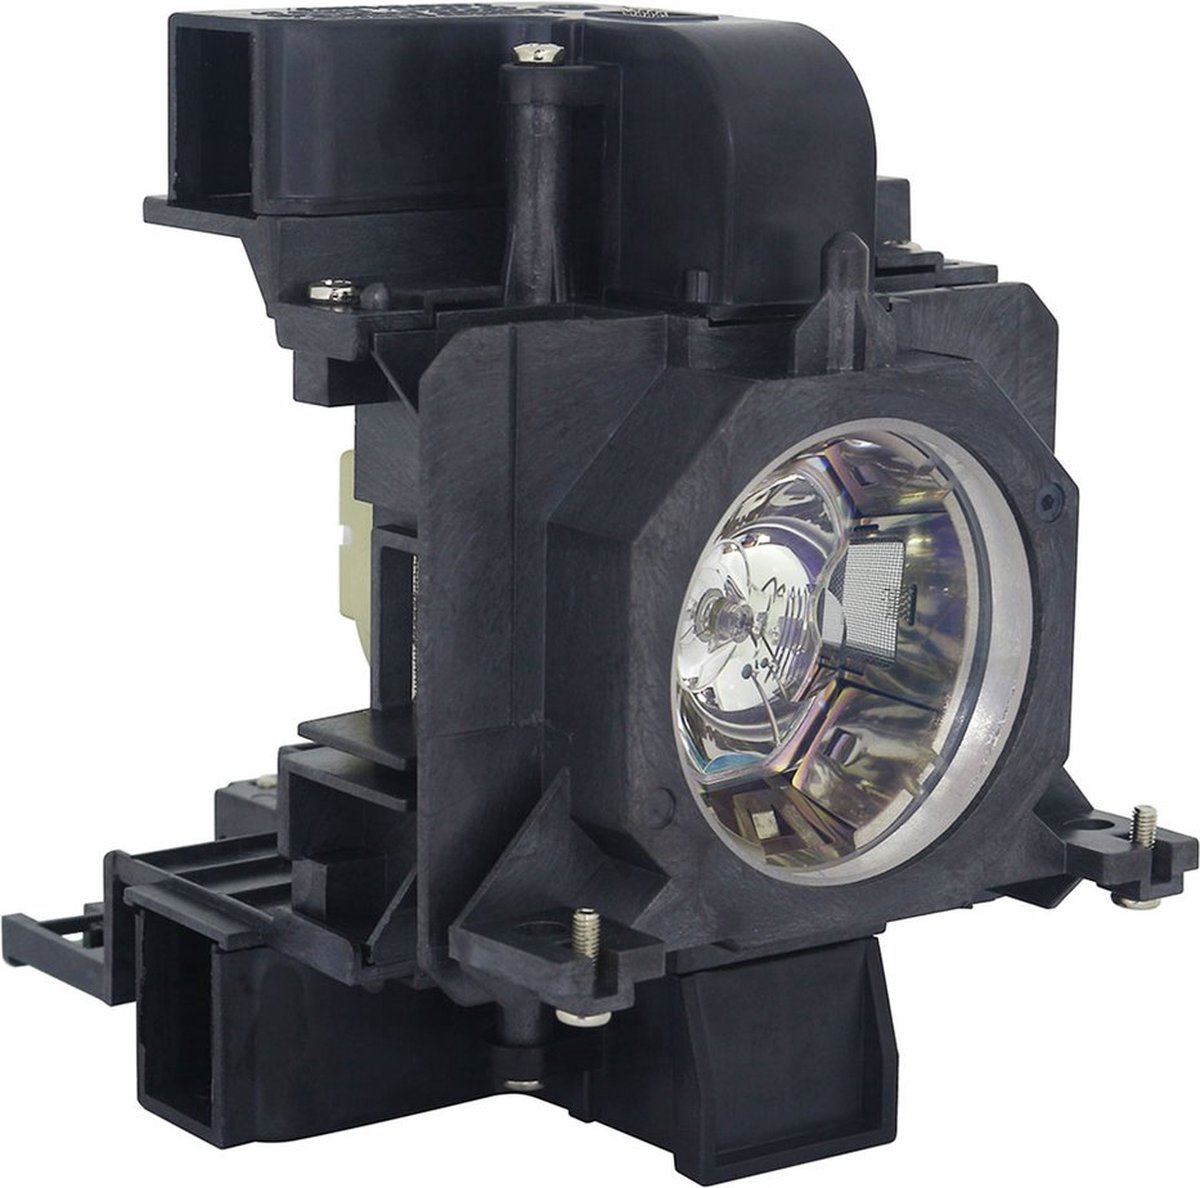 Beamerlamp geschikt voor de PANASONIC PT-EZ570EJ beamer, lamp code ET-LAE200. Bevat originele UHP lamp, prestaties gelijk aan origineel.